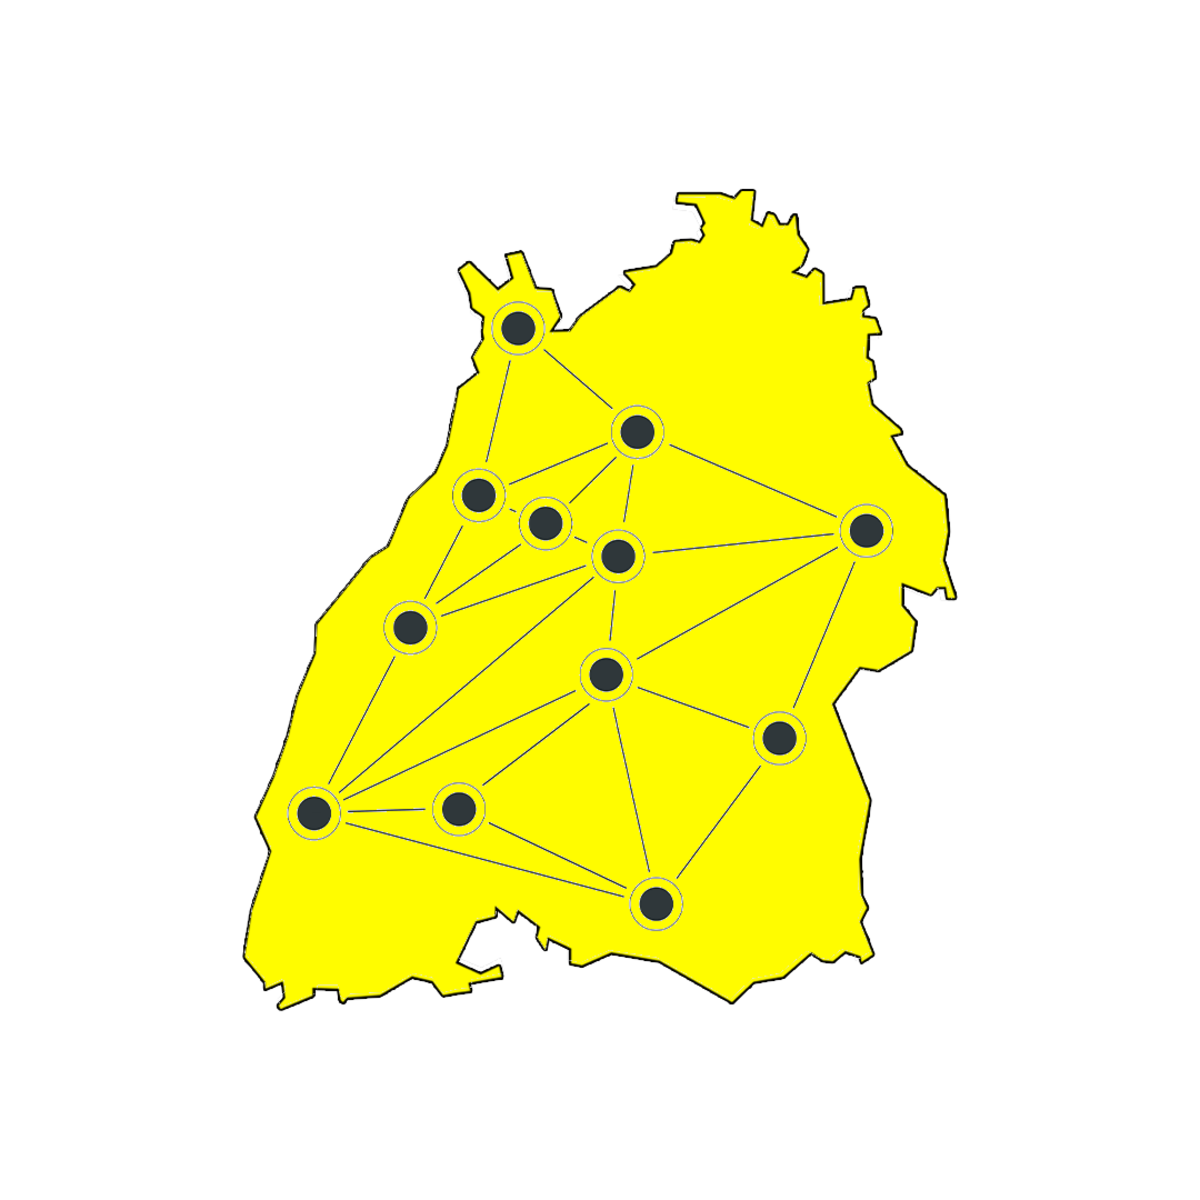 Ausgestanzte Landeskarte von Baden-Württemberg. Punkte und verbundene Linien bilden die zwölf Start-up-Ökosysteme in THE Start-up LÄND ab.